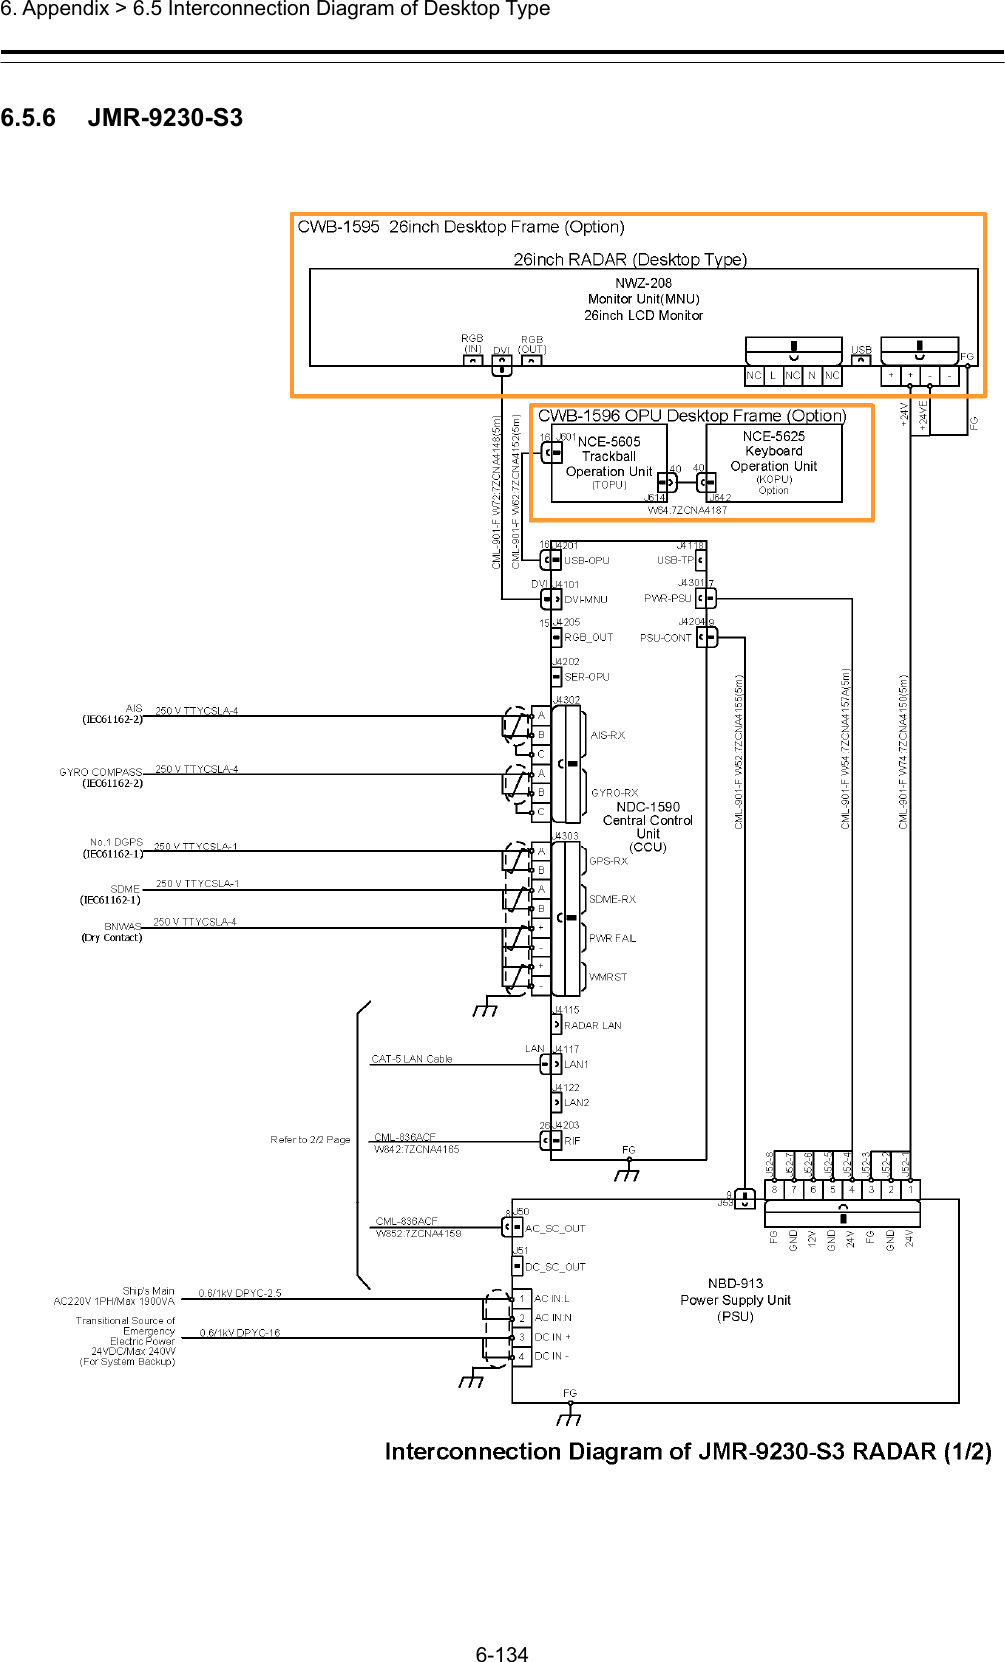  6. Appendix &gt; 6.5 Interconnection Diagram of Desktop Type 6-134  6.5.6   JMR-9230-S3  